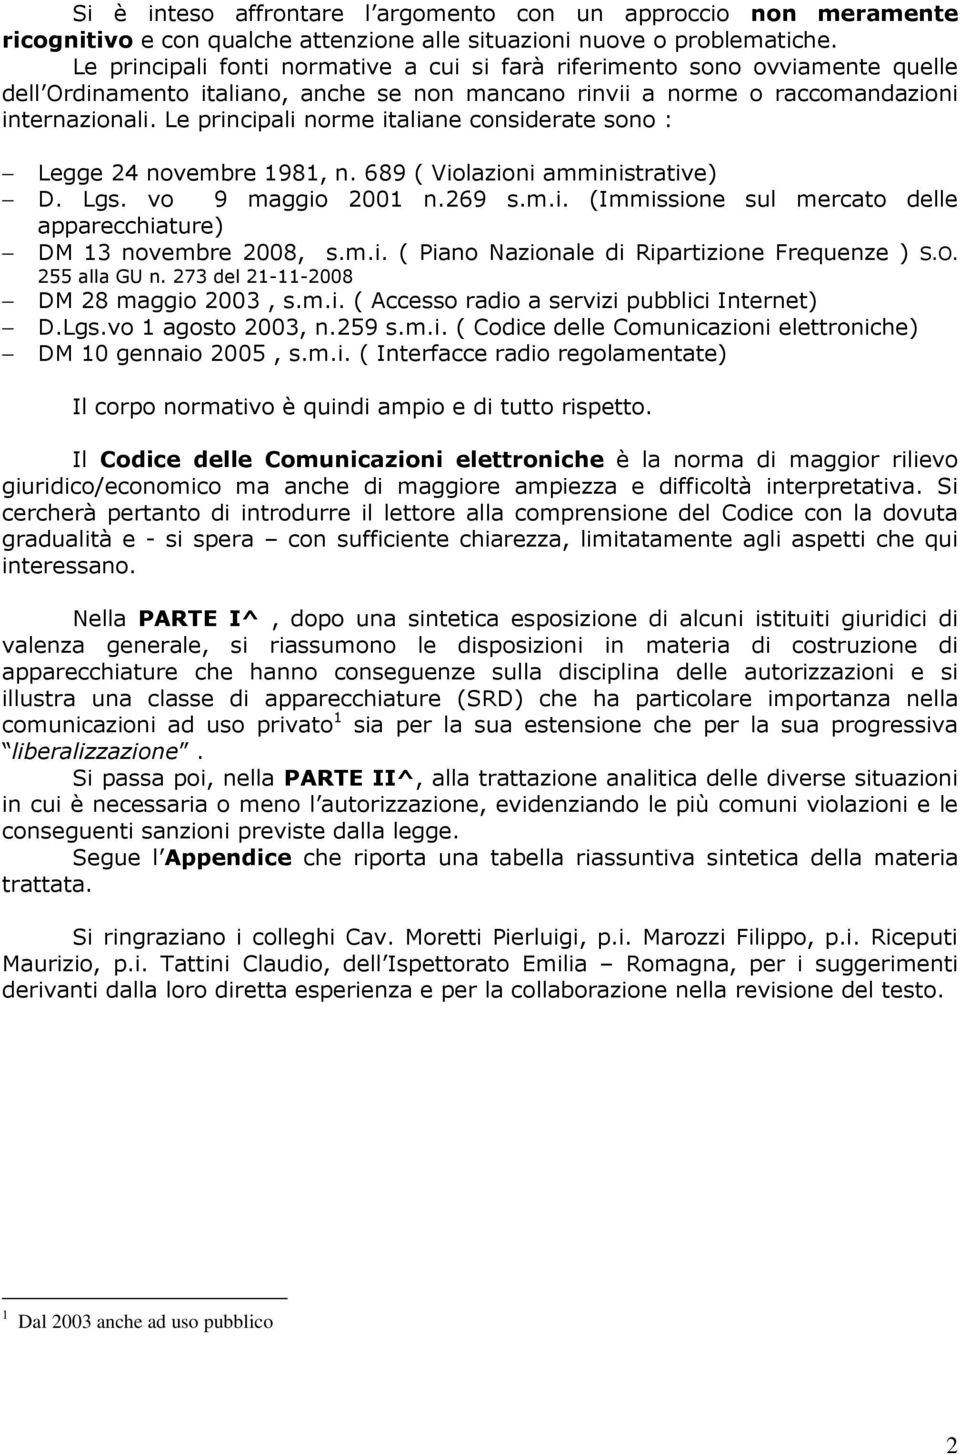 Le principali norme italiane considerate sono : Legge 24 novembre 1981, n. 689 ( Violazioni amministrative) D. Lgs. vo 9 maggio 2001 n.269 s.m.i. (Immissione sul mercato delle apparecchiature) DM 13 novembre 2008, s.